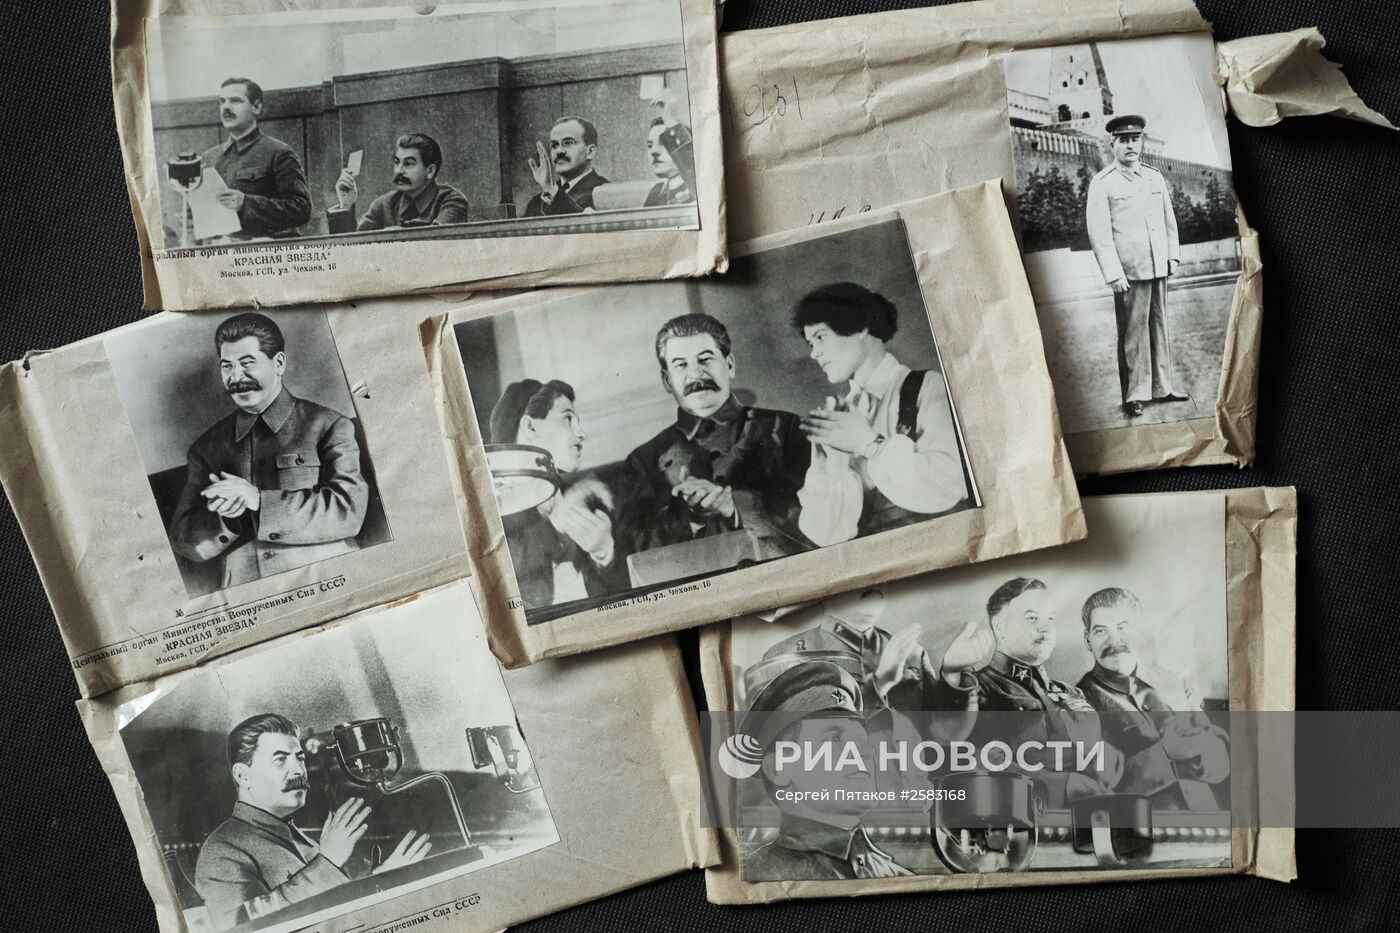 Фотоматериалы и публикации газеты "Красная звезда" периода Великой Отечественной войны